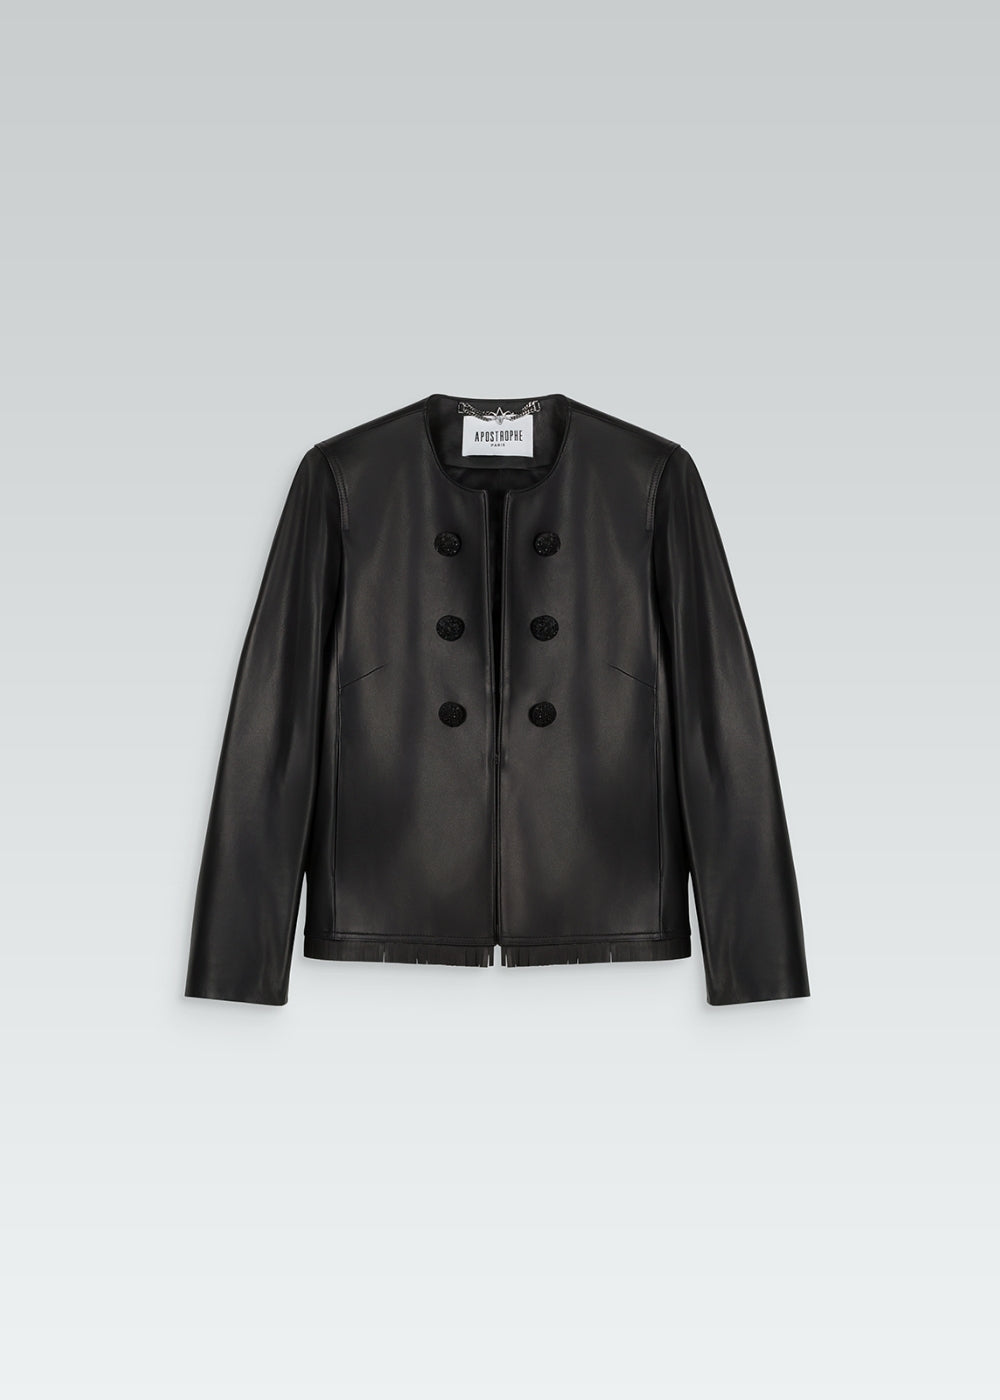 Veste courte en cuir noir avec 6 boutons à l'avant, détails franges dos et bords